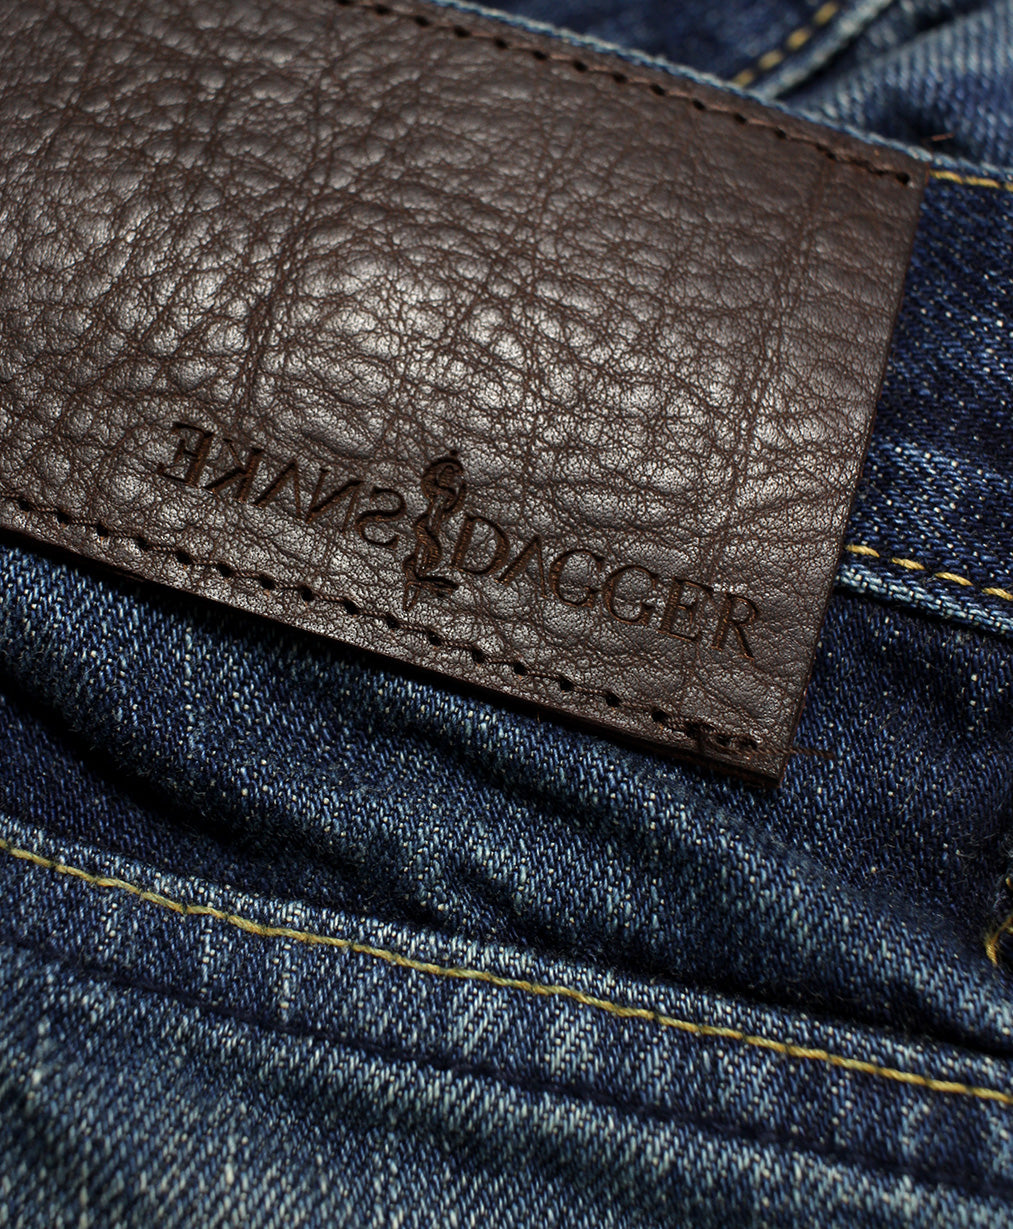 Blue Krait - Classic Vintage Clean Denim Jeans